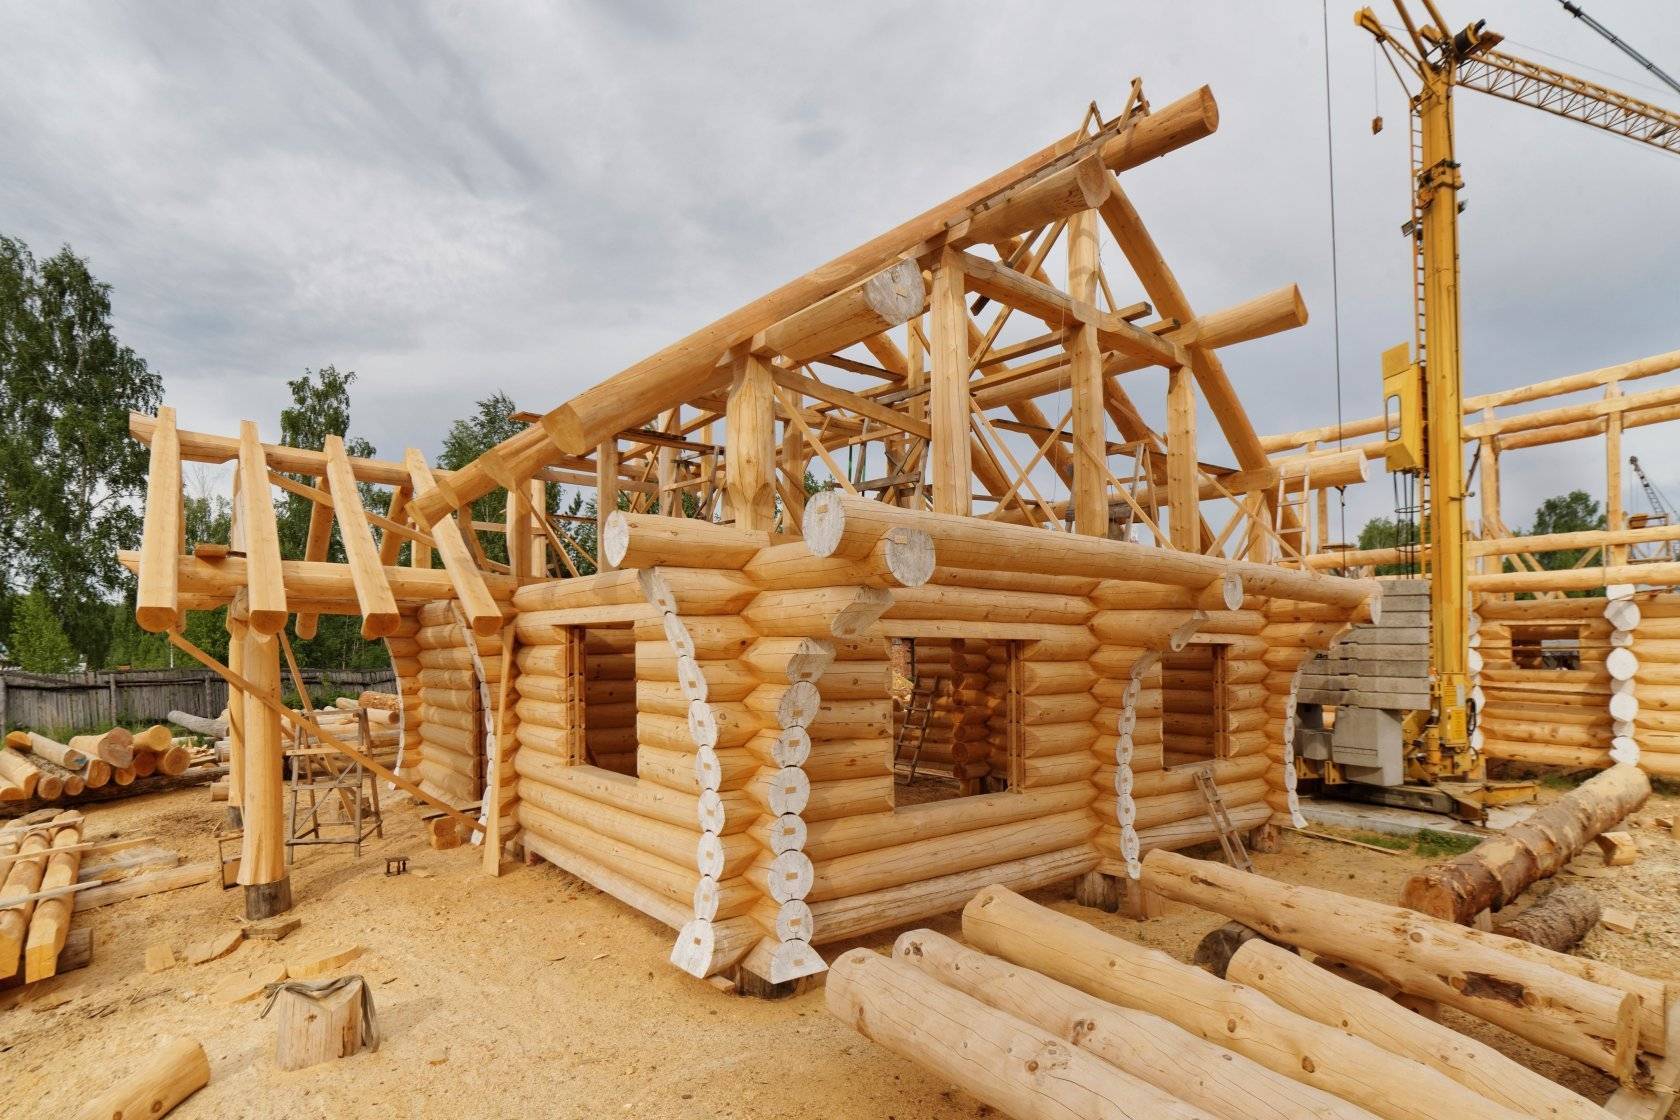 Какой дом лучше кирпичный или деревянный: экологичное здание, постройка более пригодная для жизни 